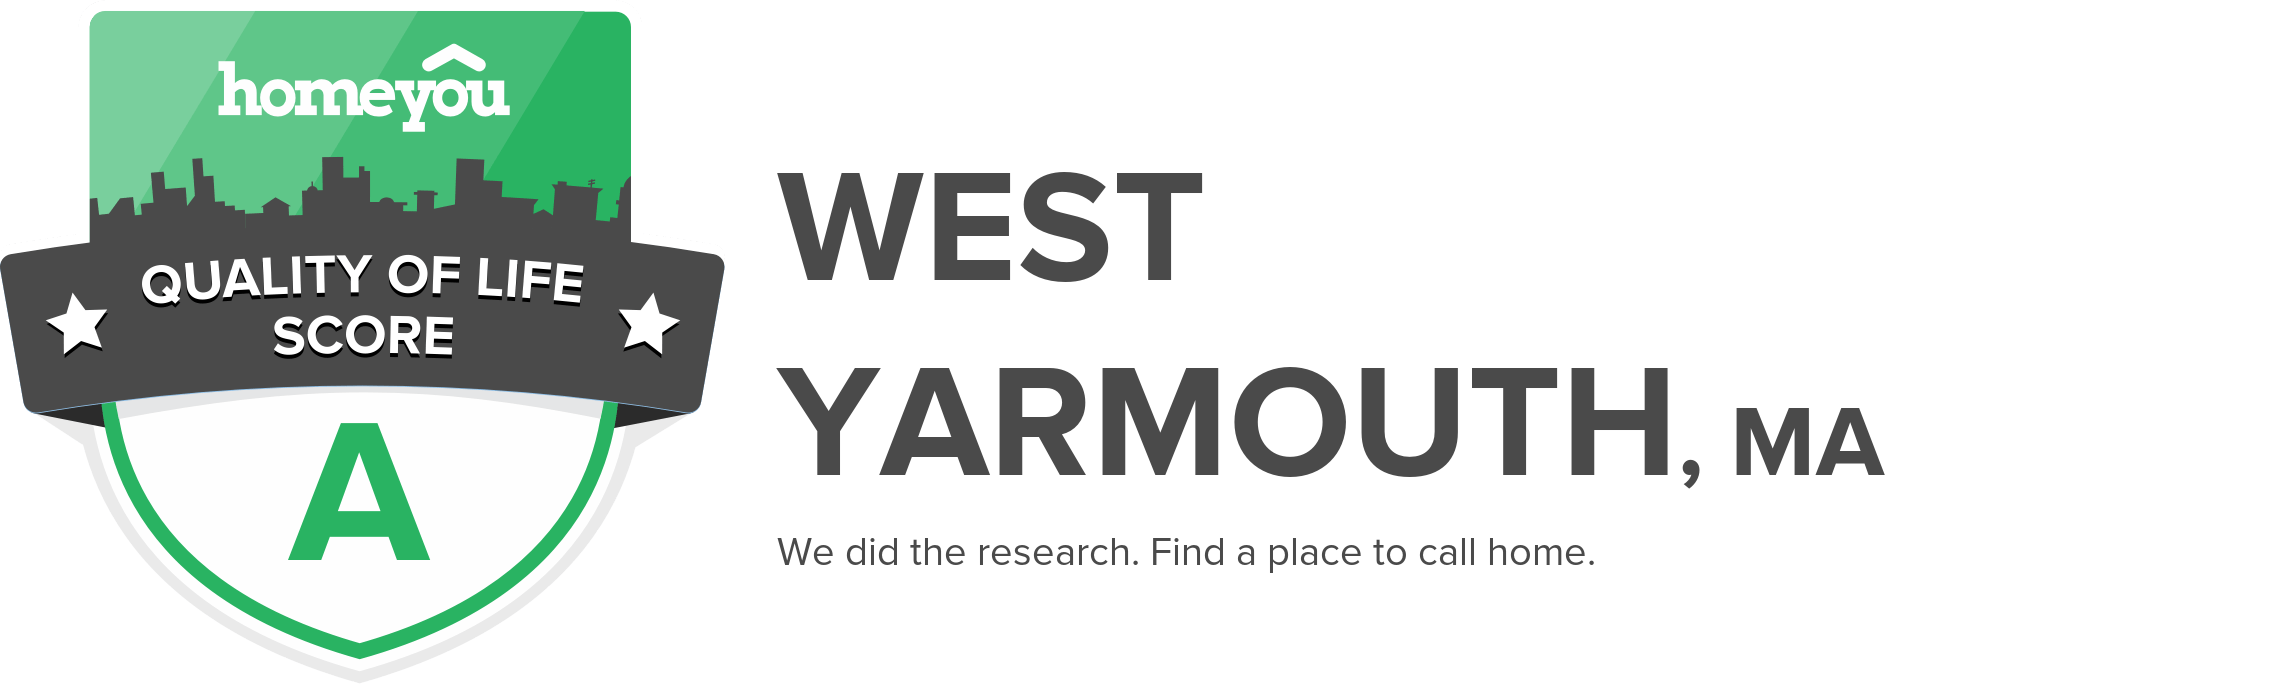 West Yarmouth, MA